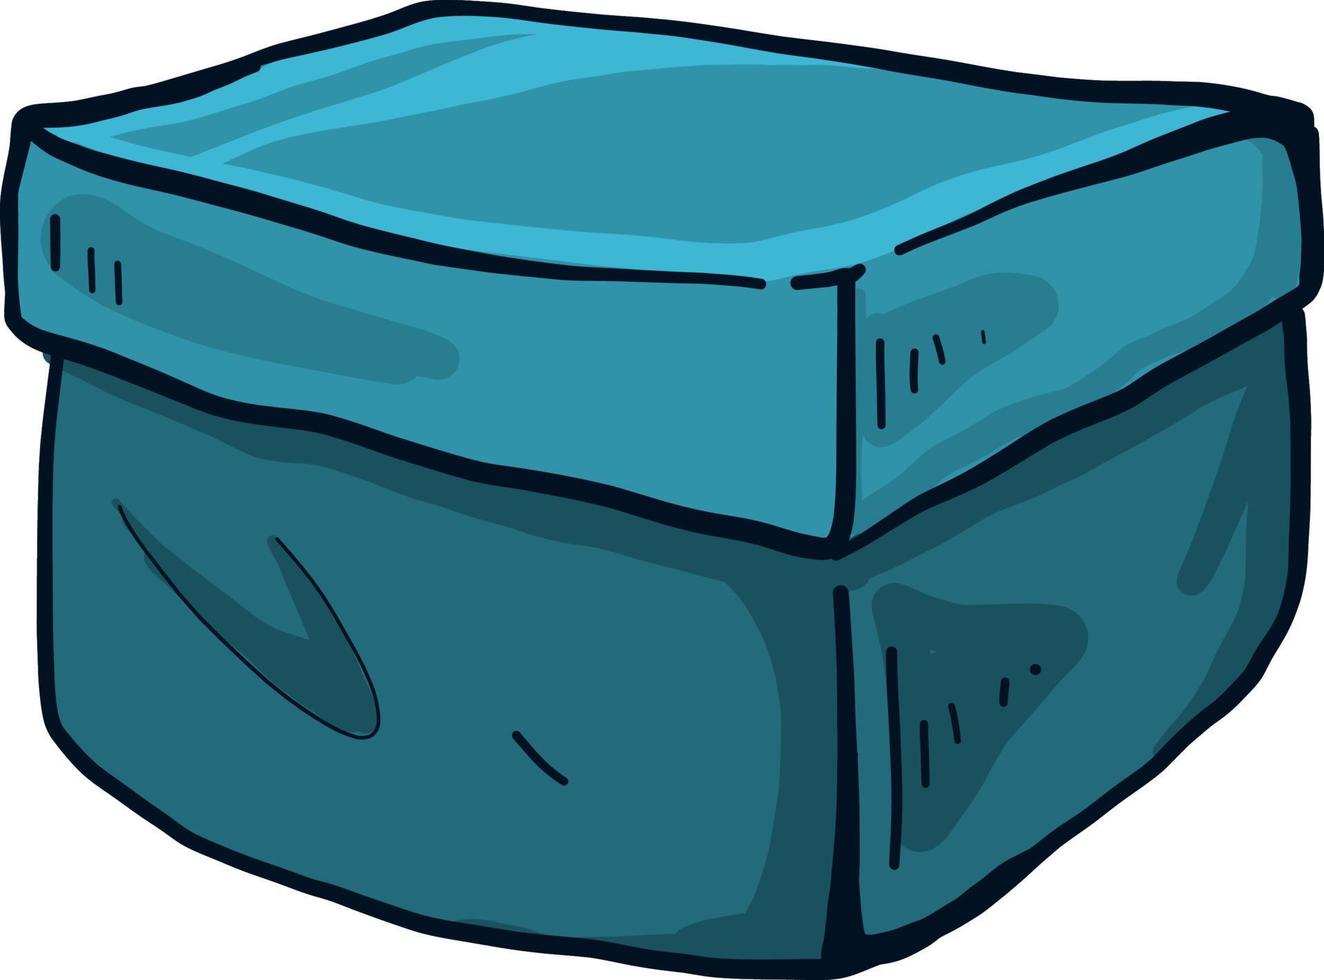 gran caja azul, ilustración, vector sobre fondo blanco.